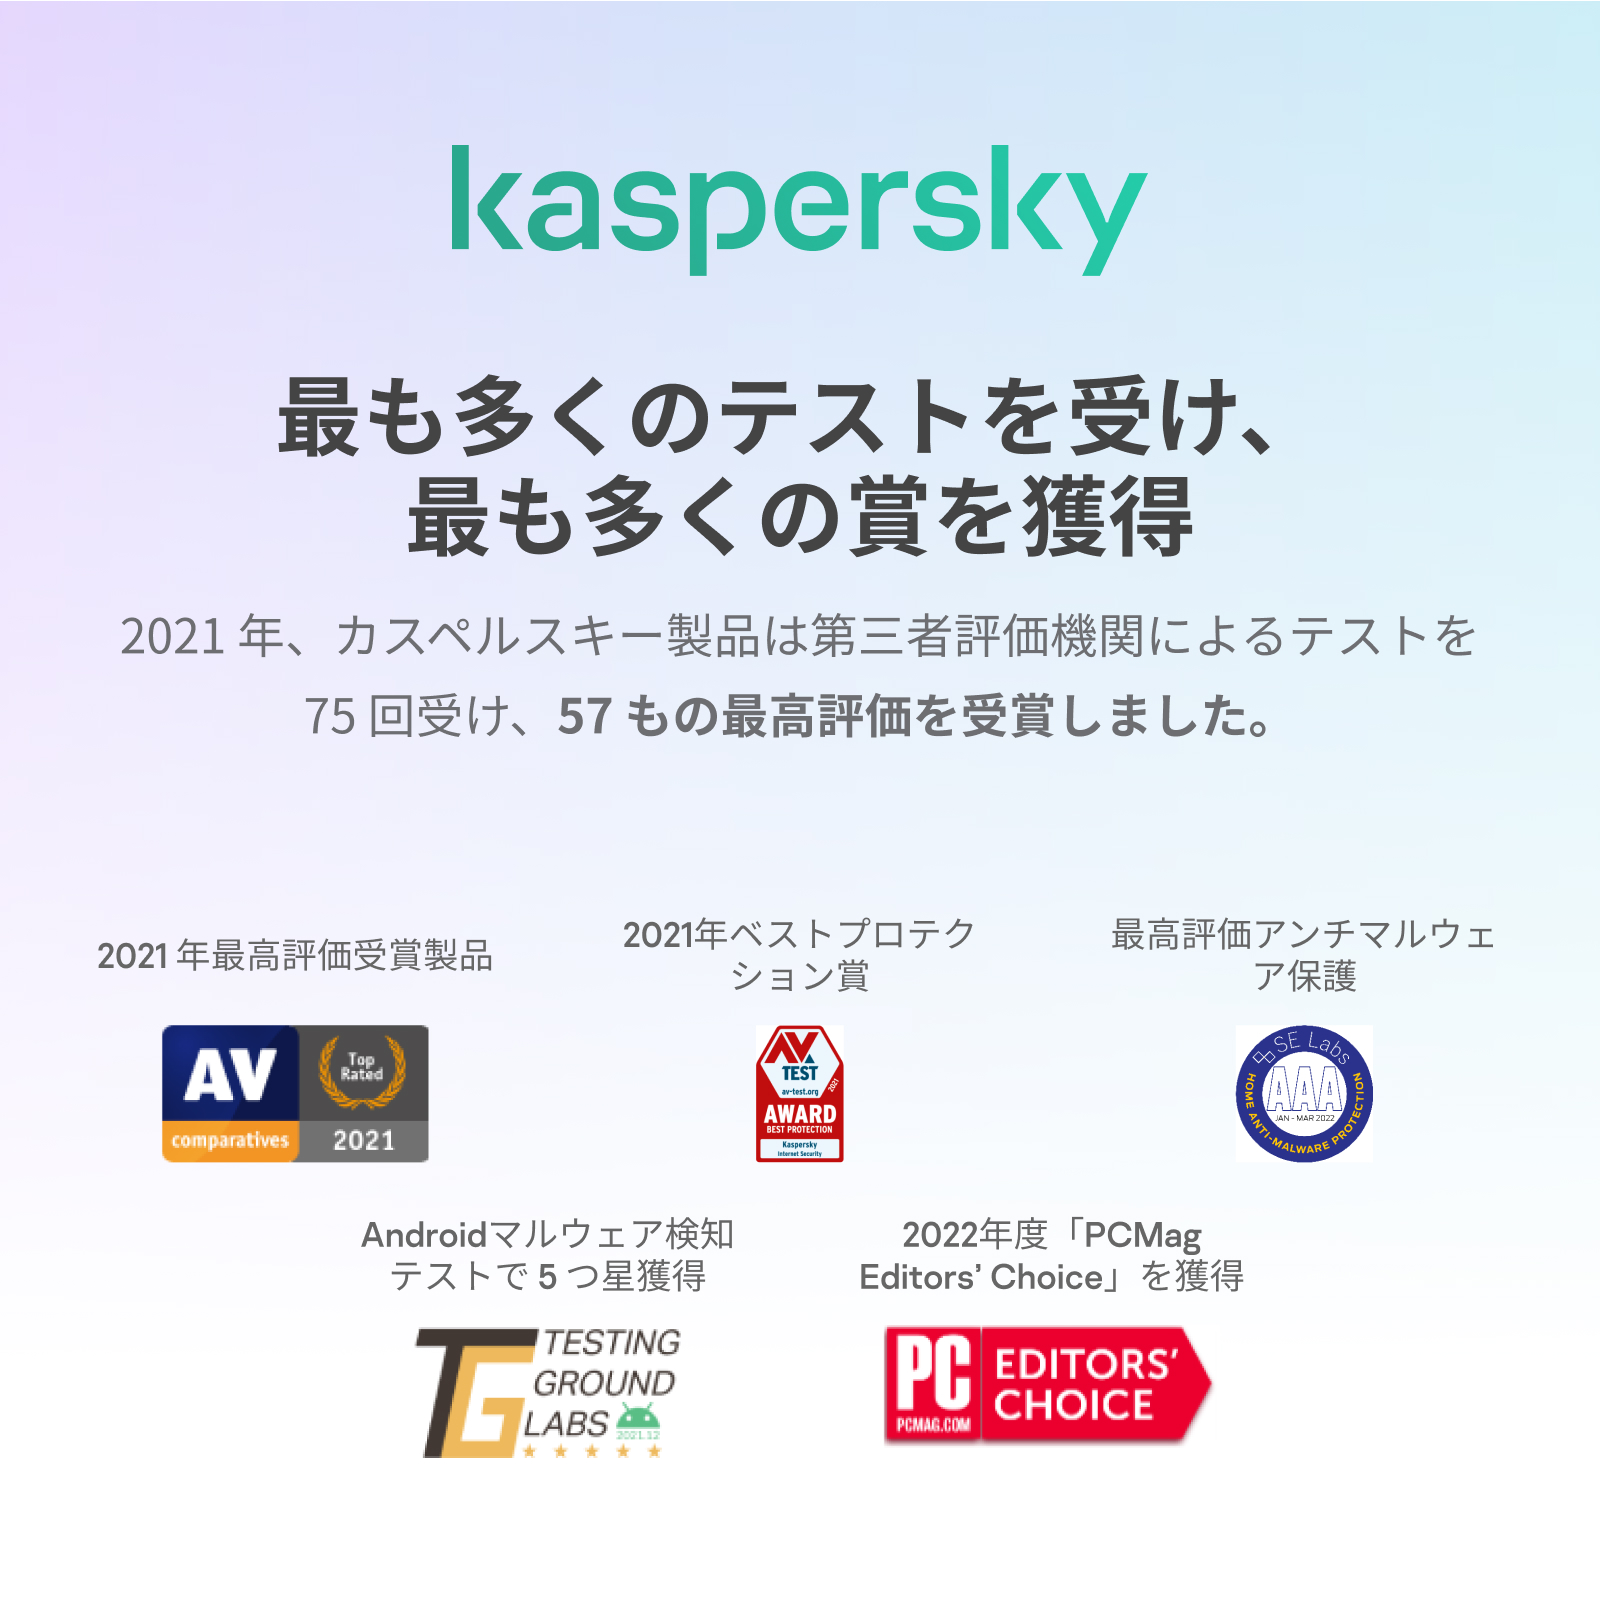 カスペルスキー プラス 3年1台版 ダウンロード セキュリティソフト ウイルス対策ソフト Windows/Mac/Android/iOS  対応 カスペルスキー公式 